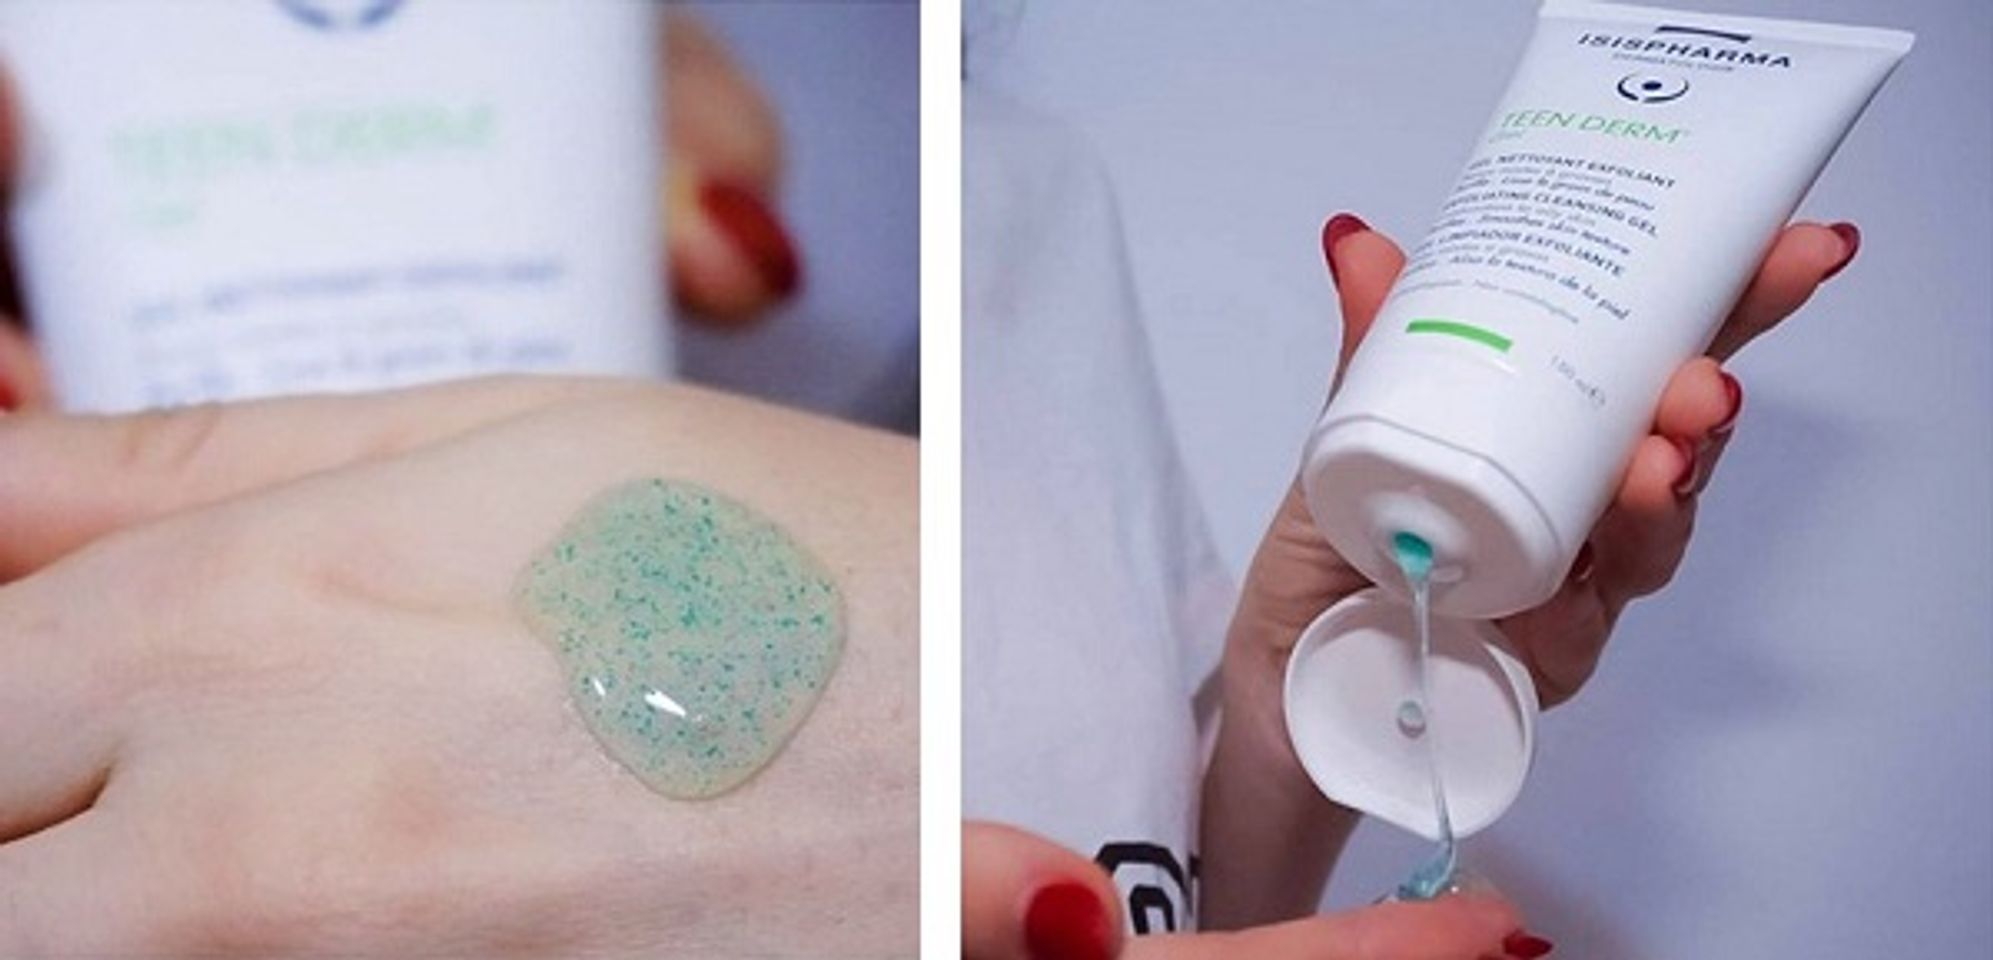 Sữa rửa mặt Isis Pharma Teen Derm Gel thiết kế dạng gel trong đặc có lẫn các hạt màu xanh dương